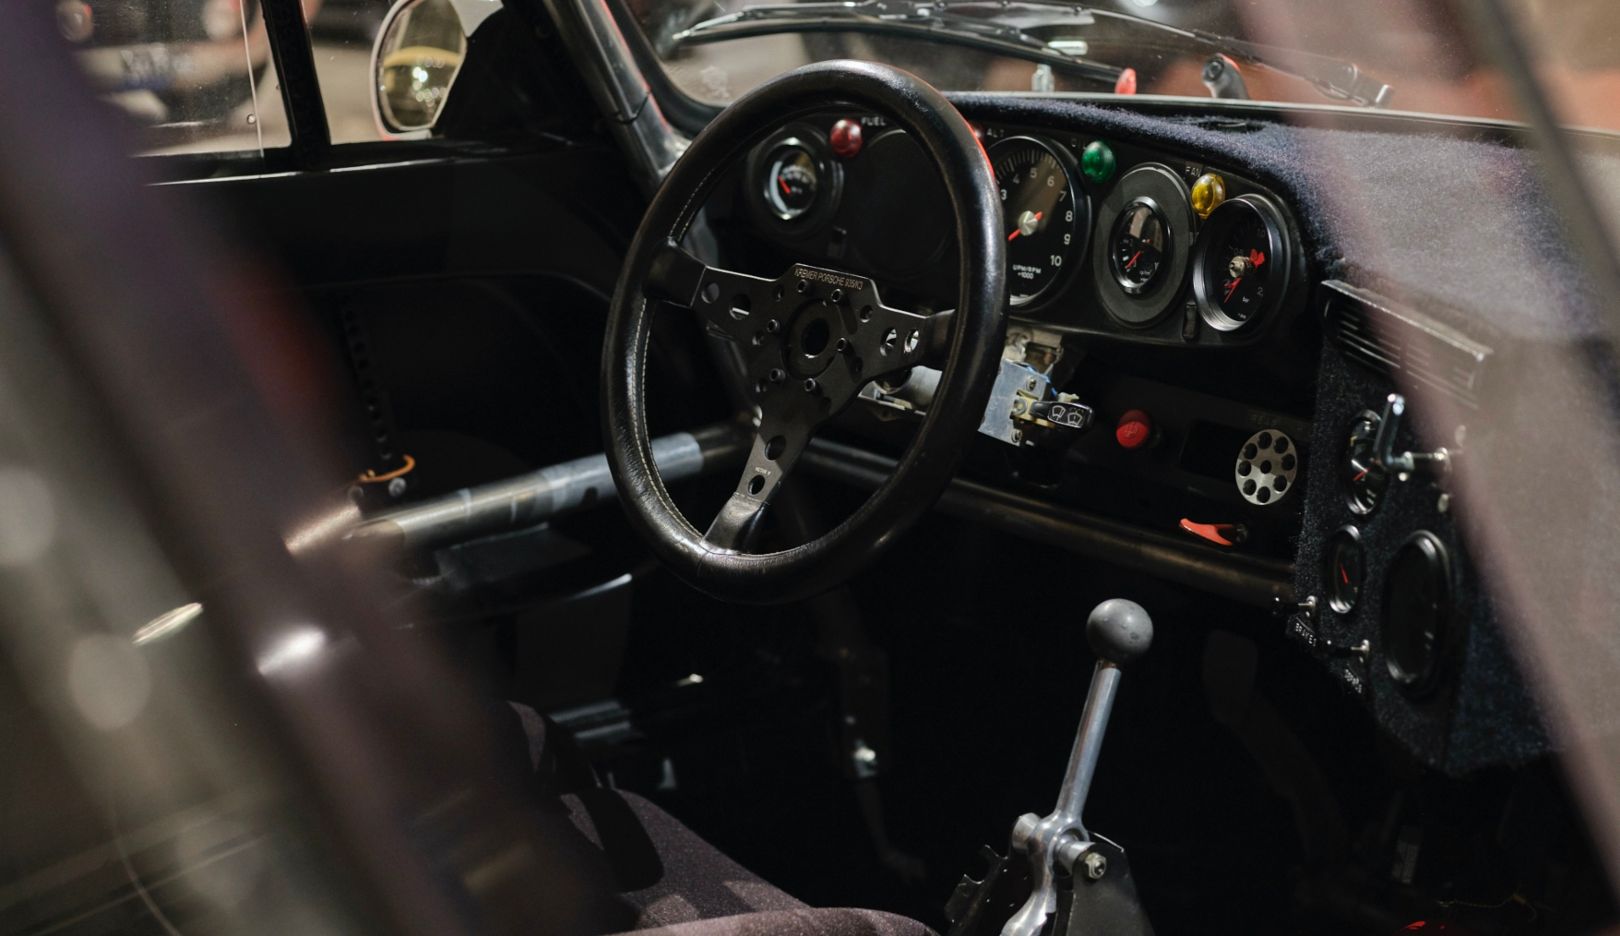 Plongée dans le cockpit : Meyer confie qu’il n’a jamais mis les pleins gaz en conduisant la voiture de course.